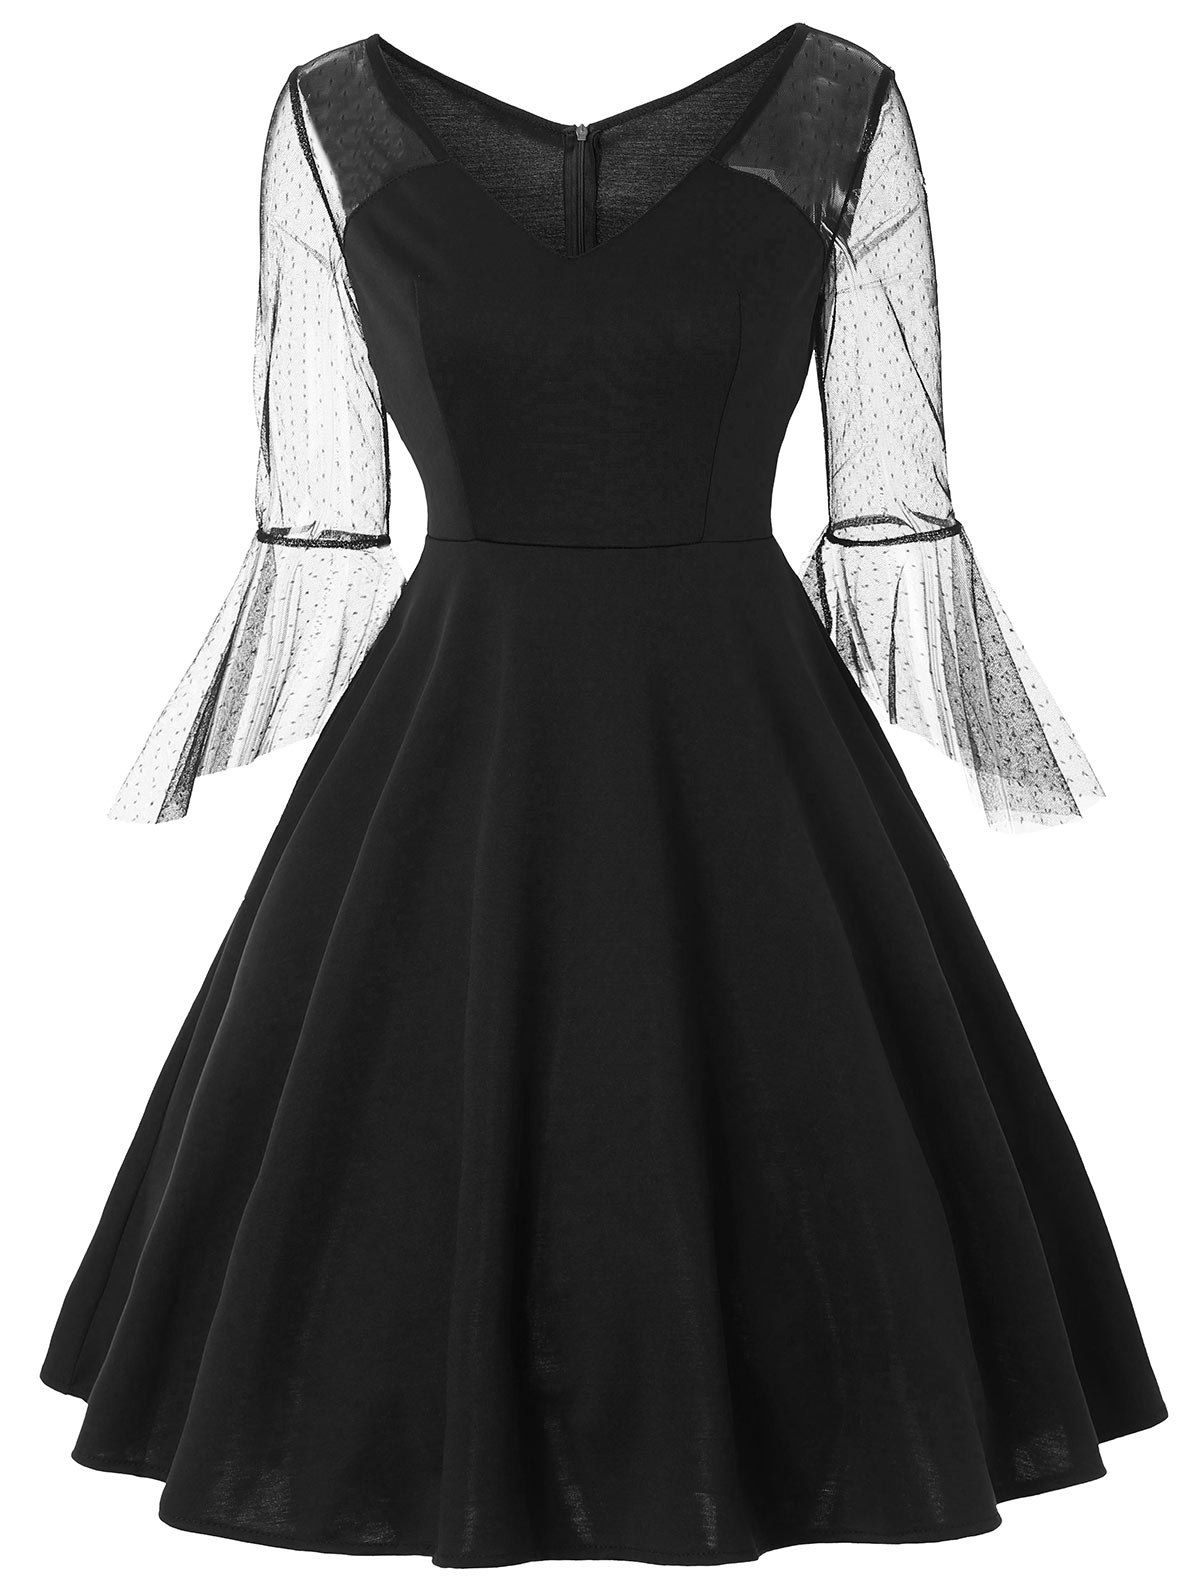 [17% OFF] 2020 Lace Panel Bell Sleeve Vintage Dress In BLACK | DressLily